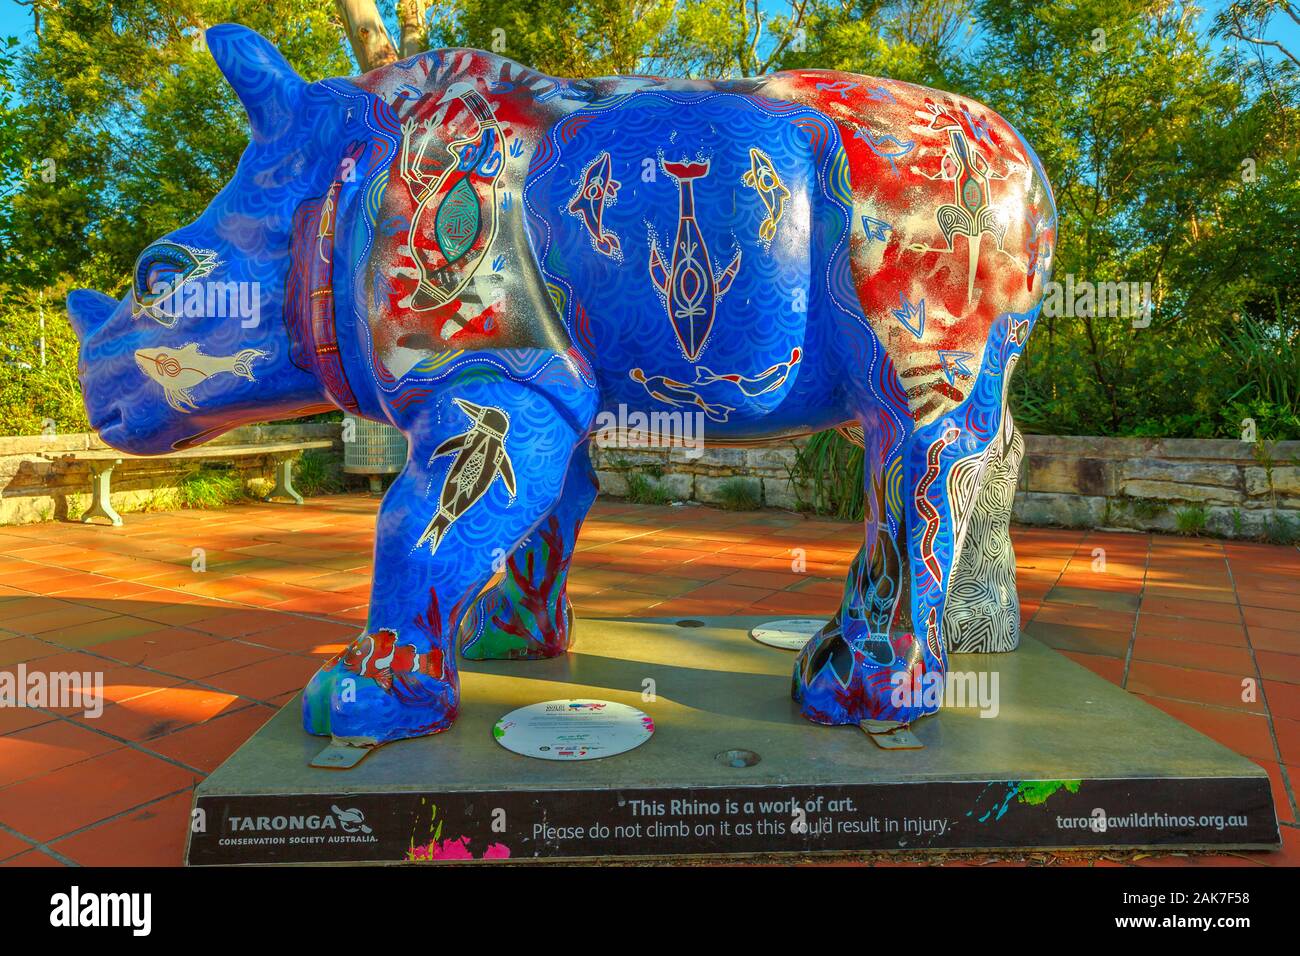 Sydney, Nuovo Galles del Sud, Australia - 30 DIC 2014: closeup selvatiche di Rhino scultura commissionata dal Taronga Western Plains Zoo in area di Katoomba Foto Stock